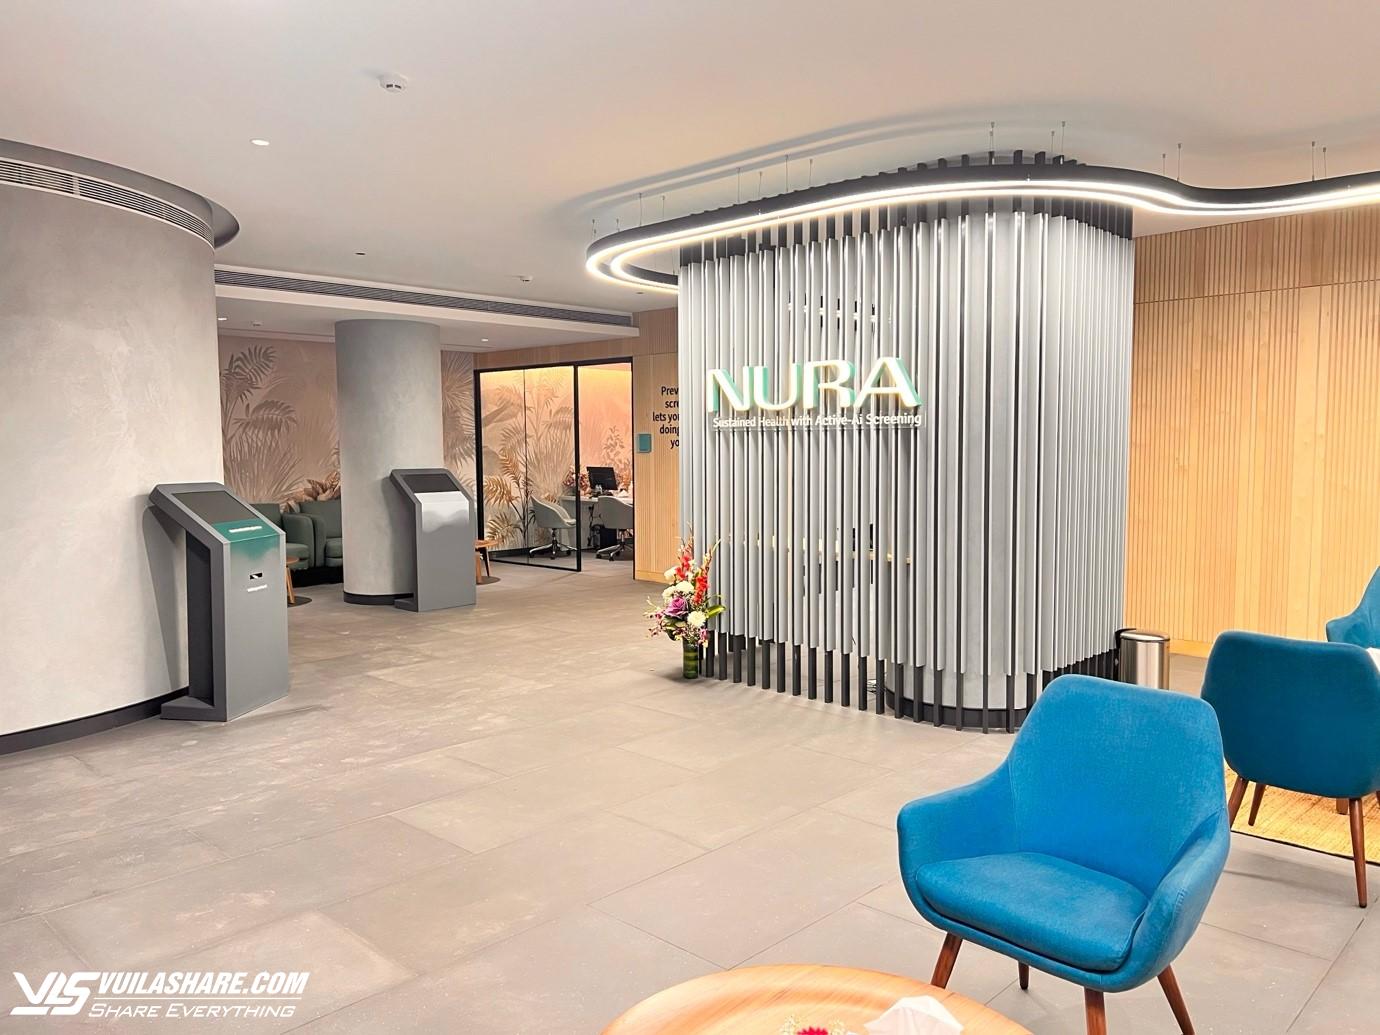 NURA - Trung tâm tầm soát sức khỏe tích hợp AI công nghệ cao của Fujifilm